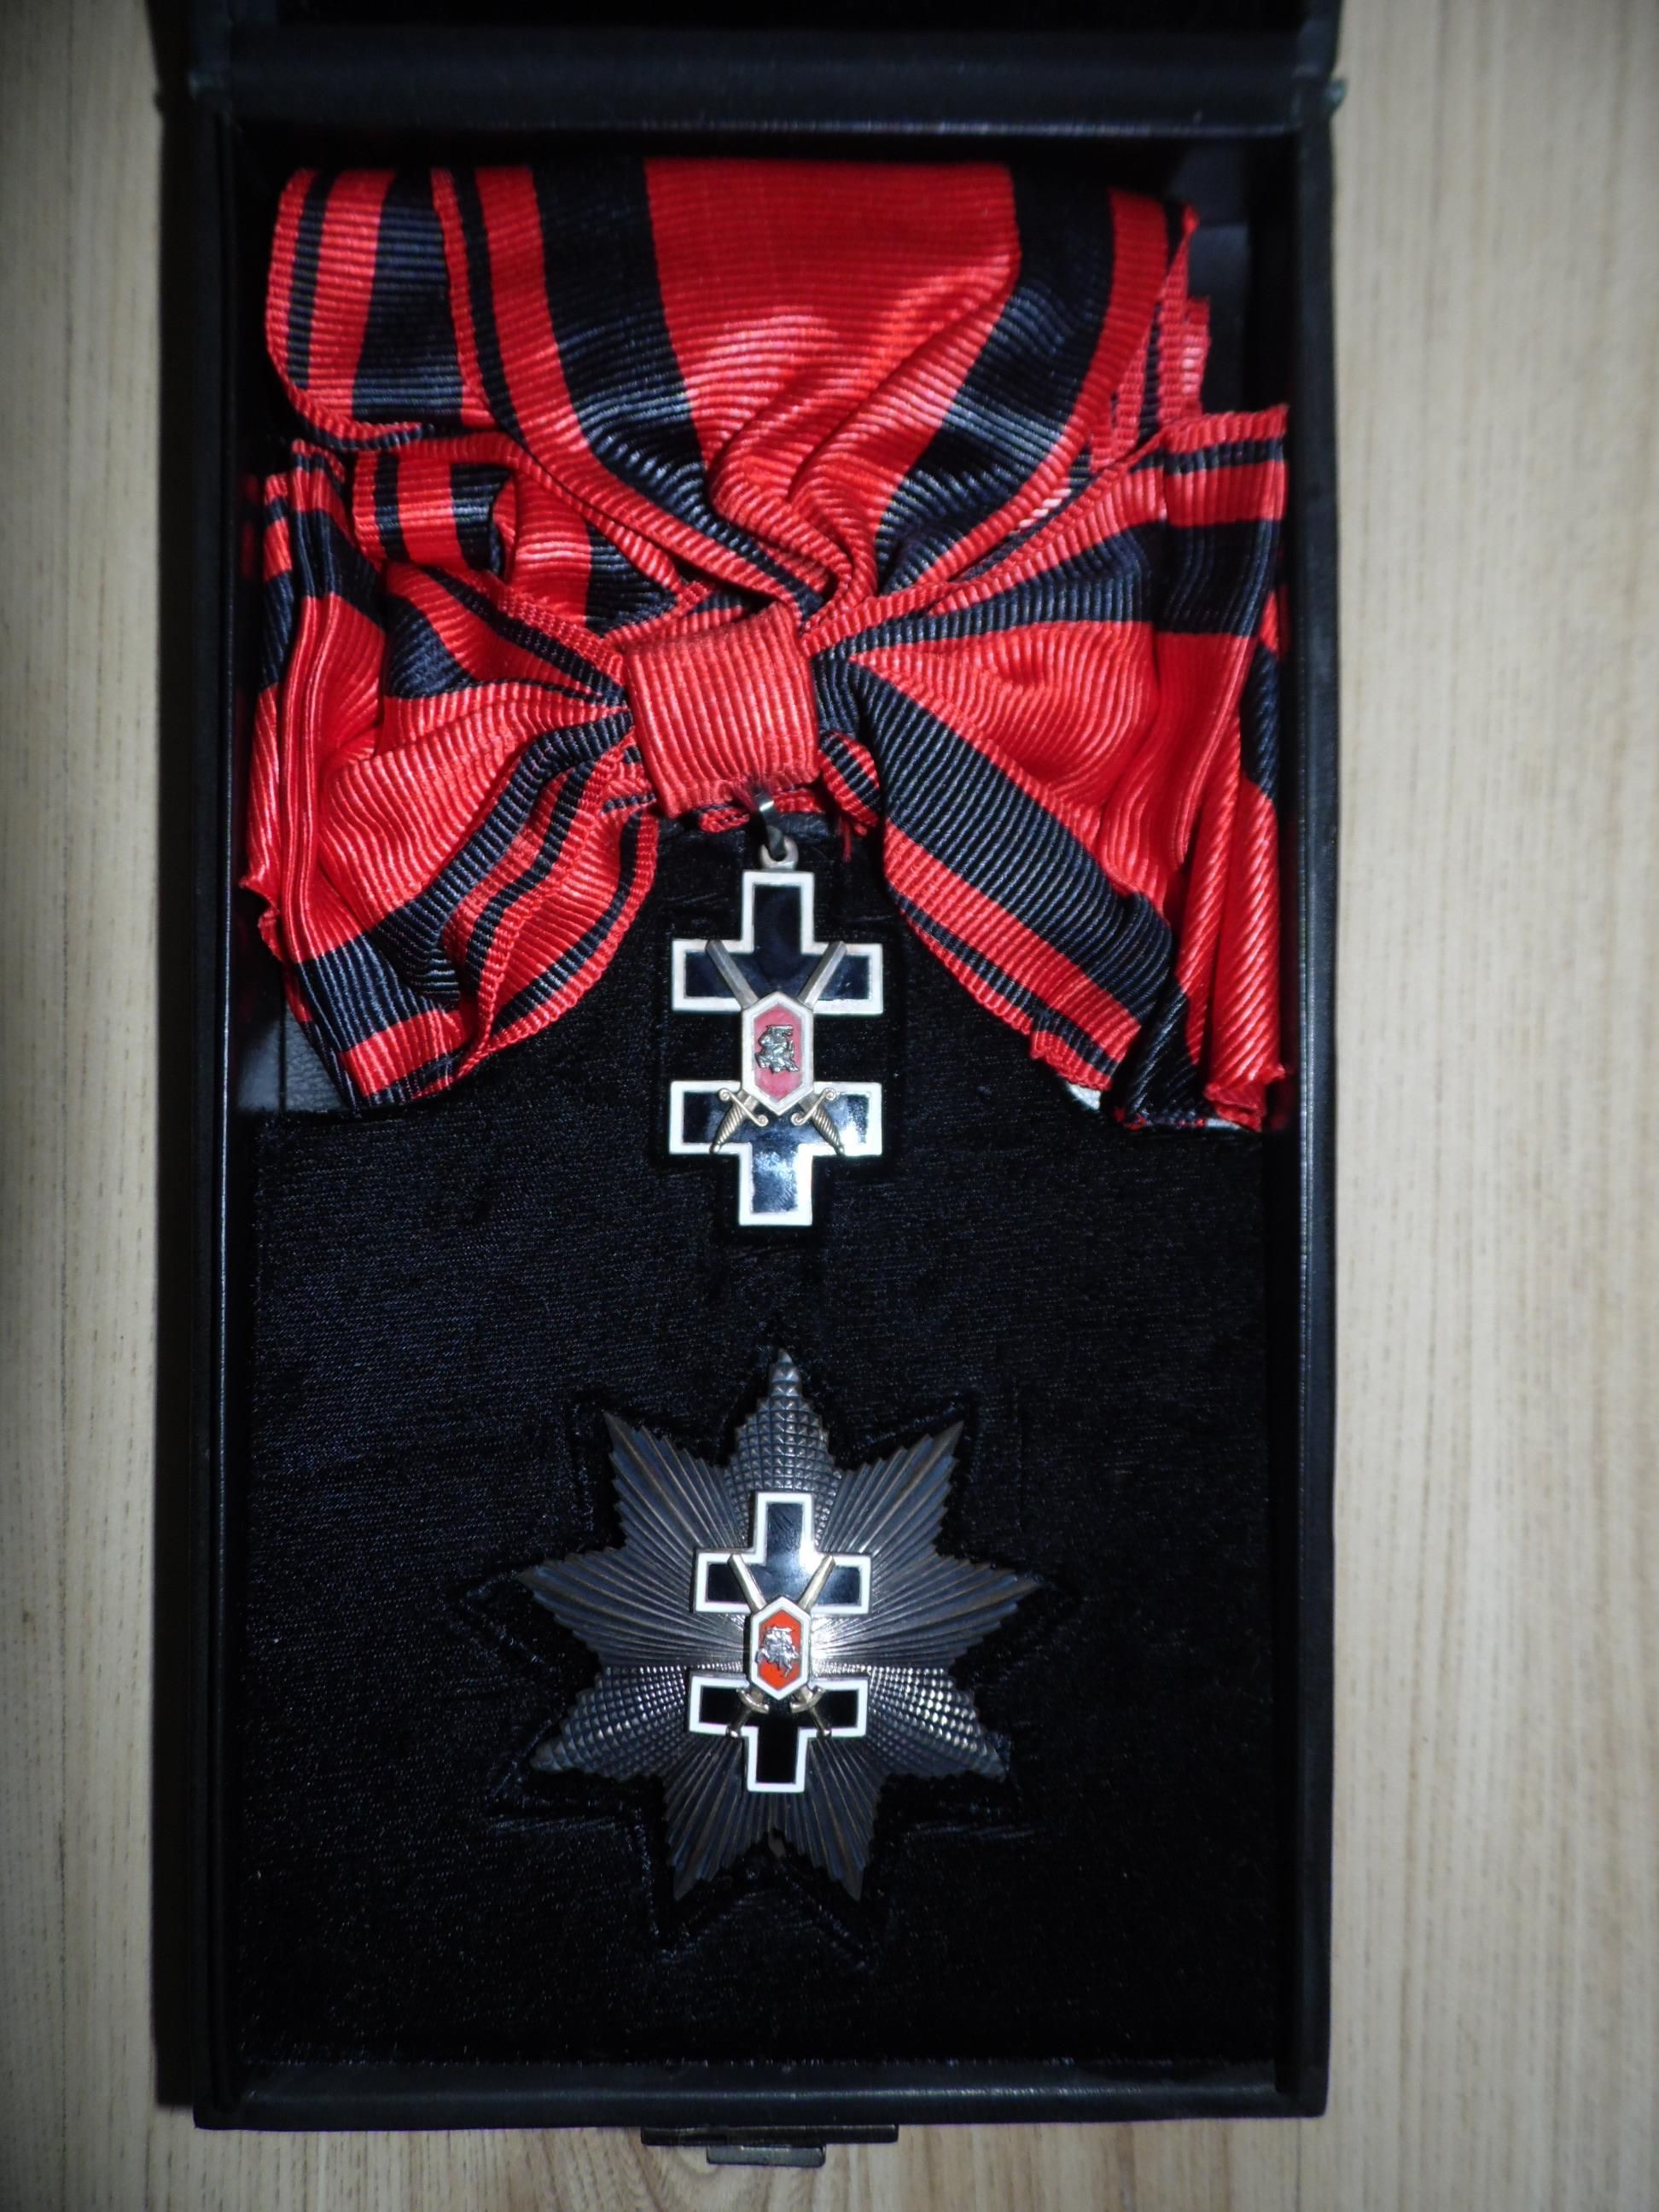 Орден Крест Витиса I степени с звездой, образца 1991 года. Из коллекции Г. Сакалаускаса